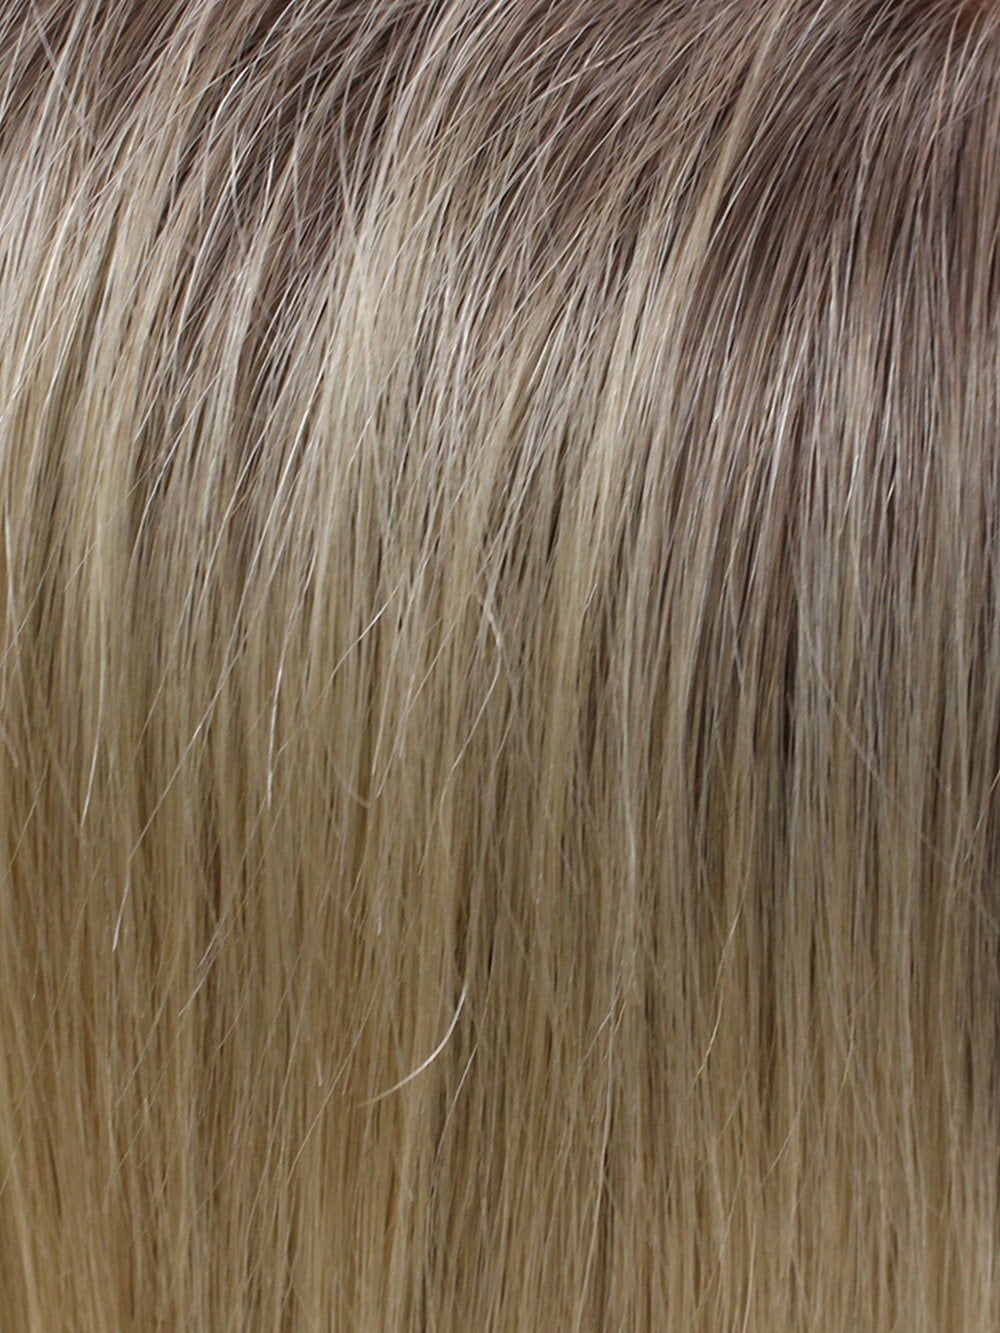 02-6 | Beige Blonde with Dark Brown Roots